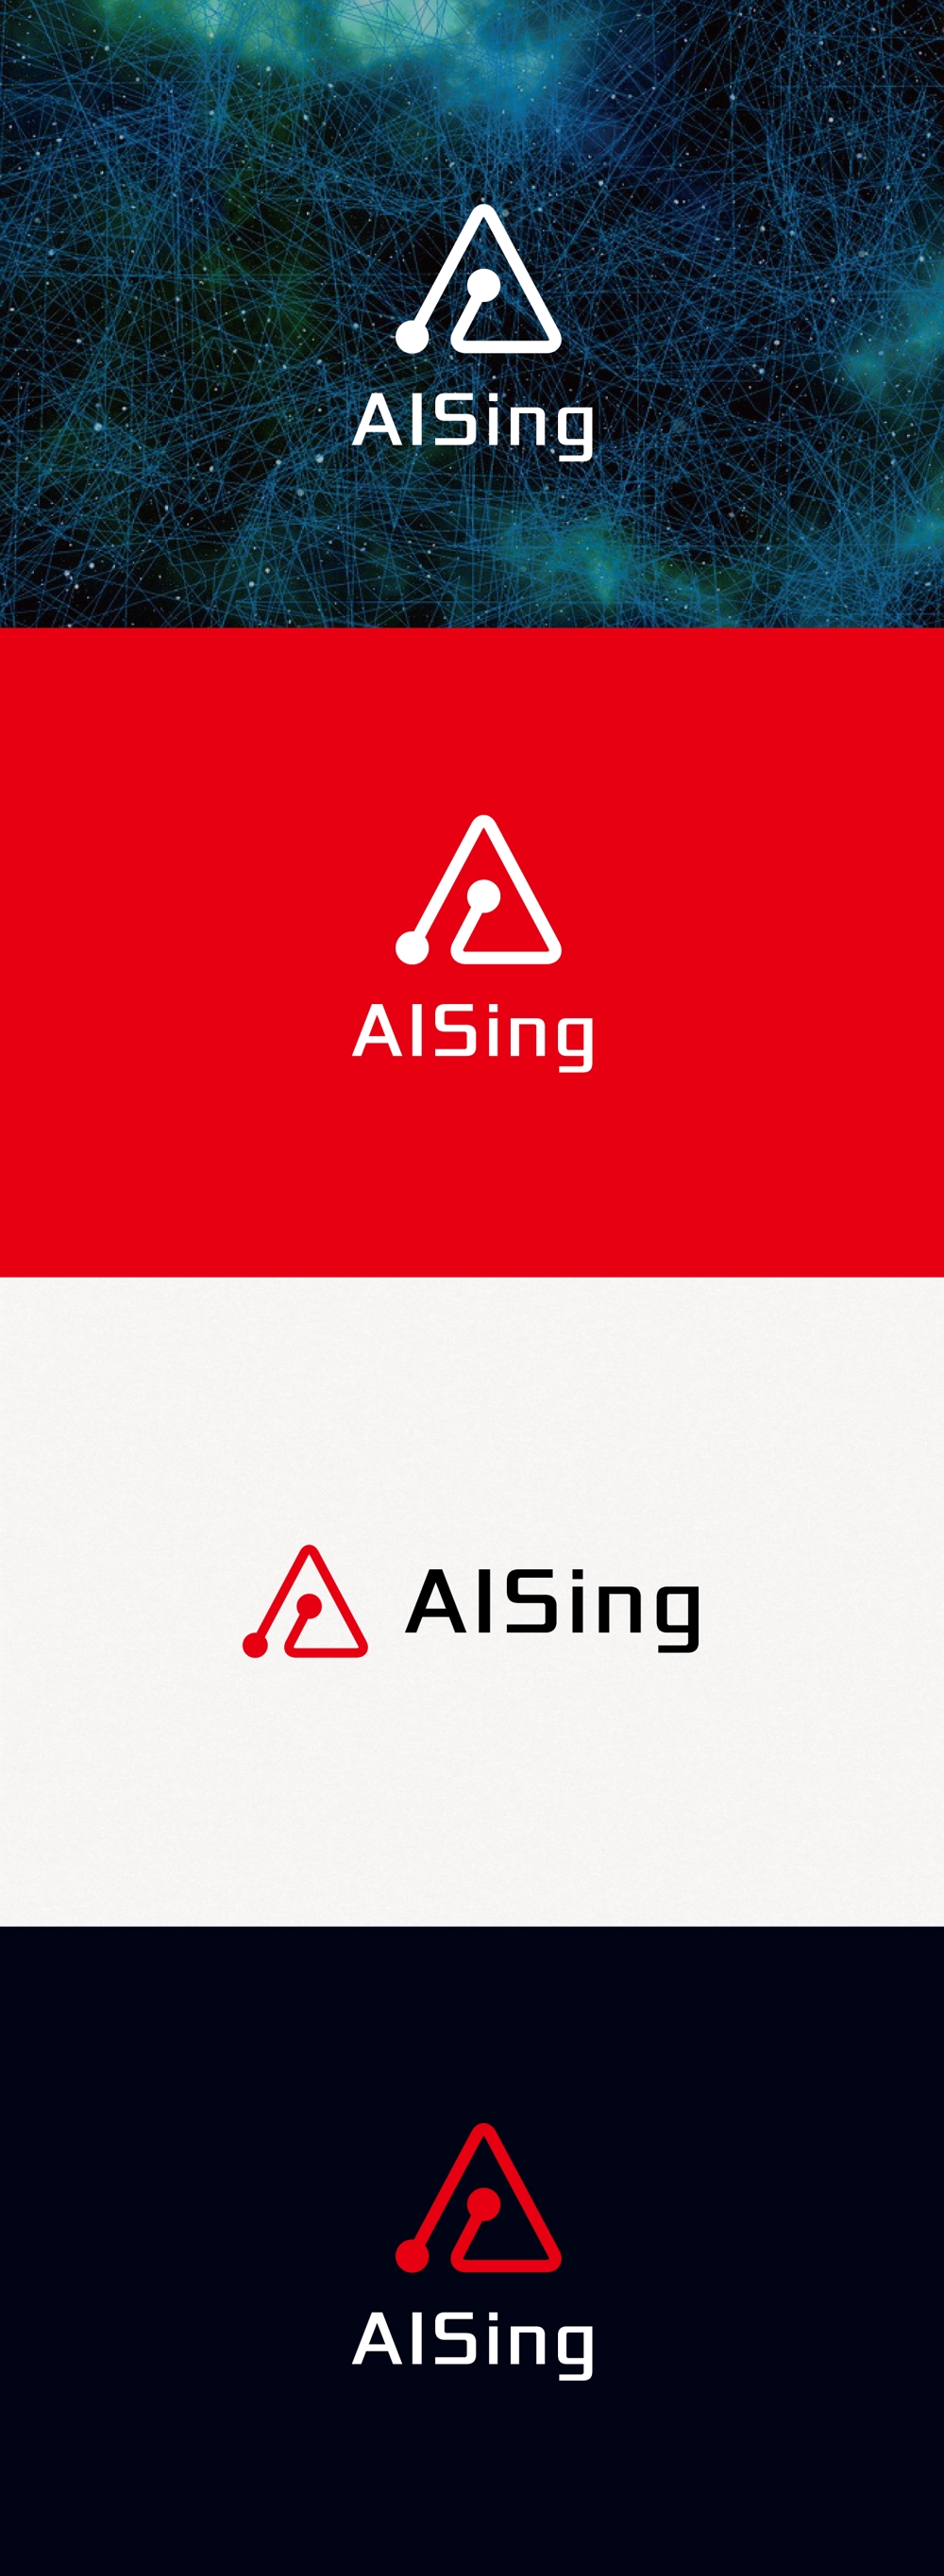 AIベンチャー企業「AISing」(エイシング)のロゴ